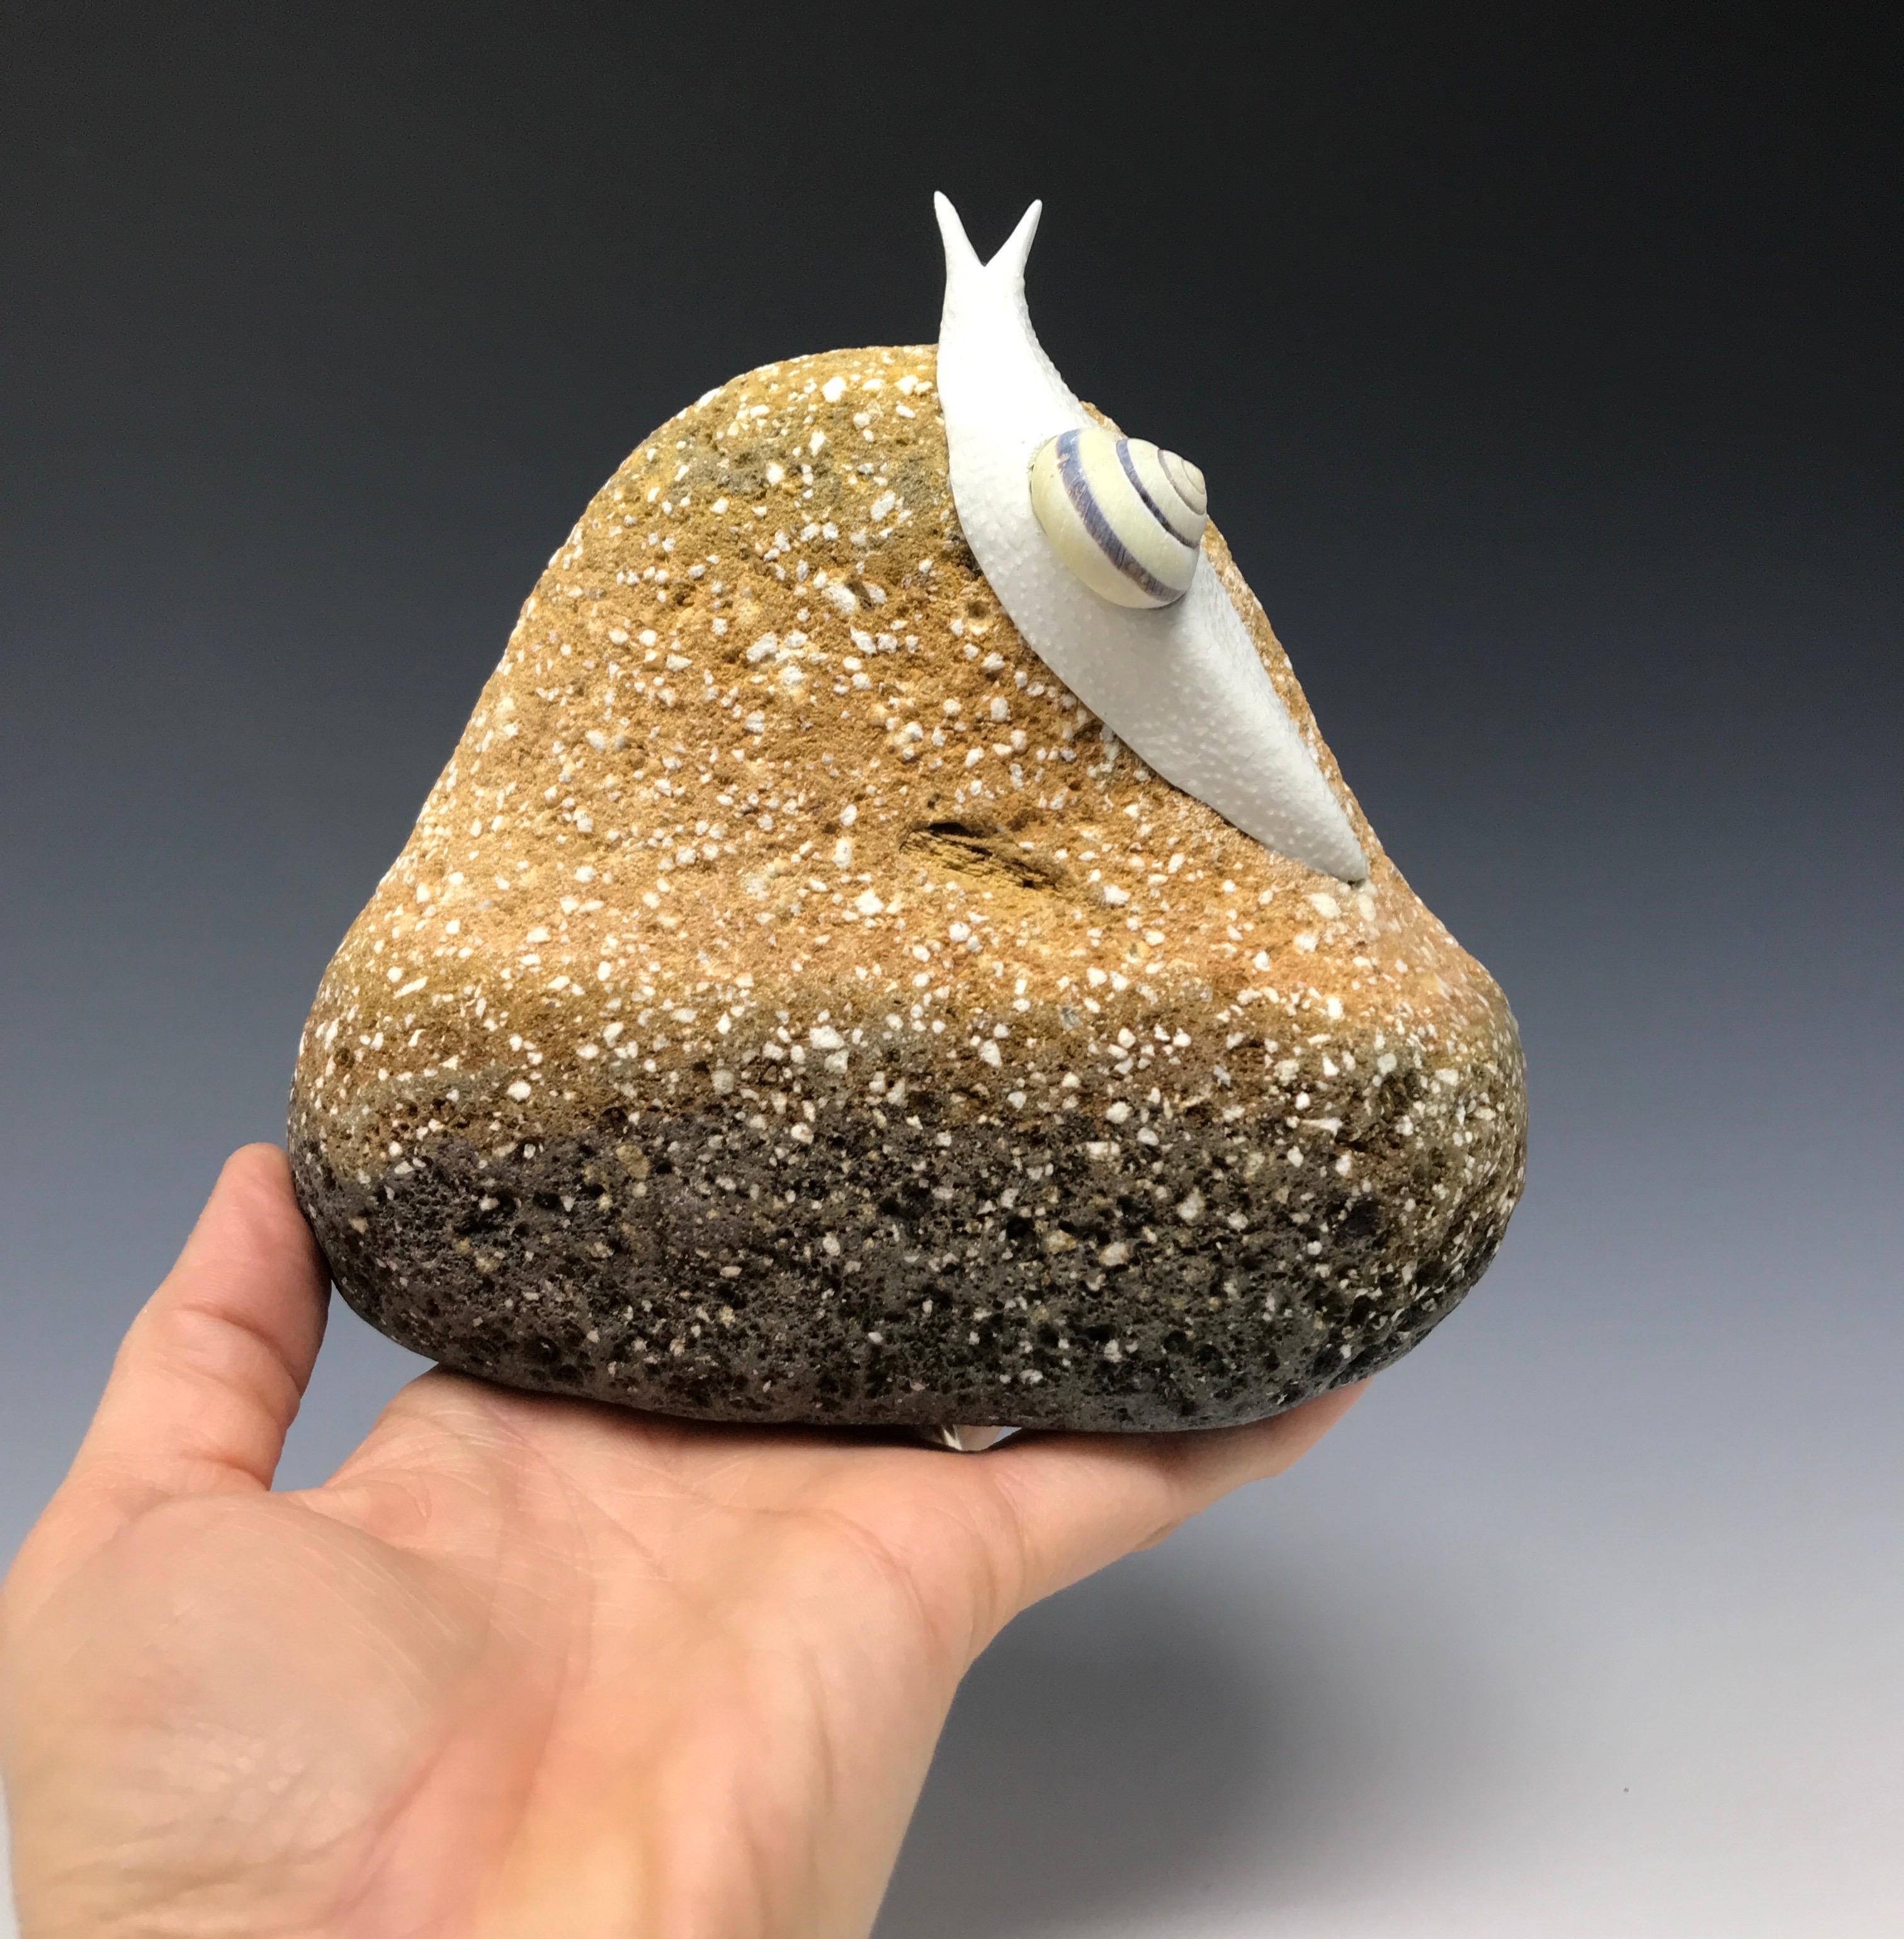 Snail study on a rock form 